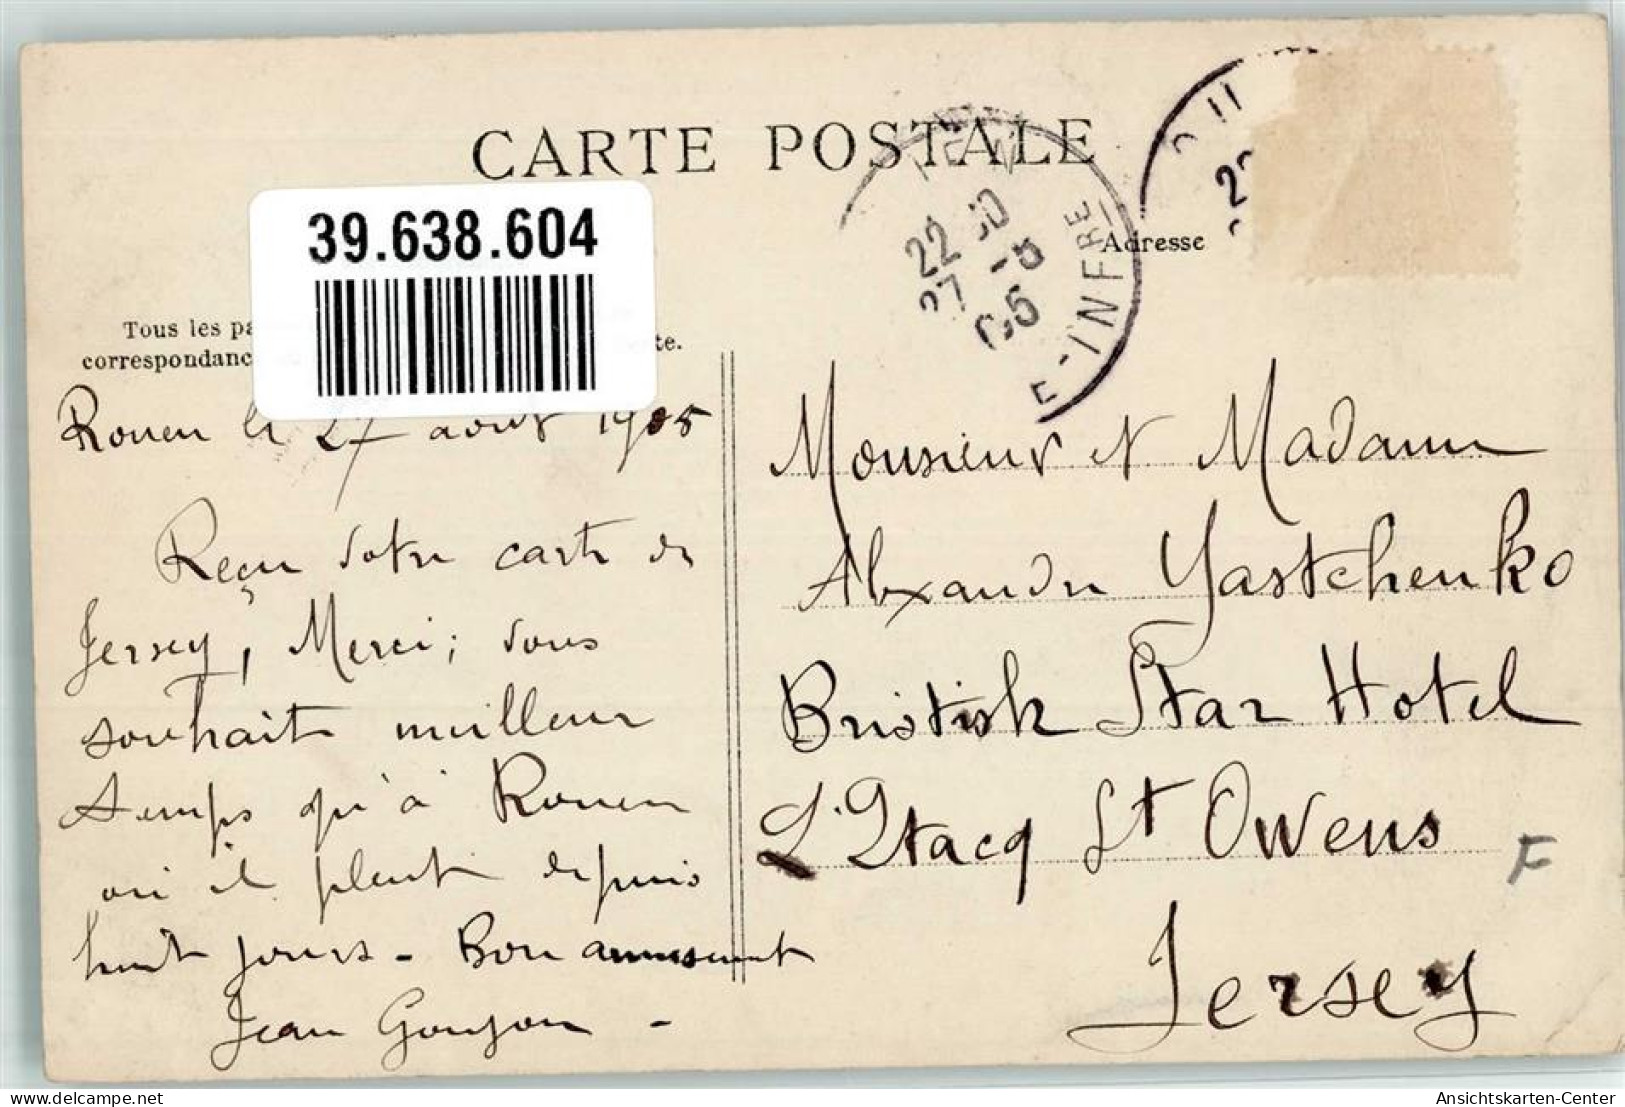 39638604 - La Bouille - Harfleur